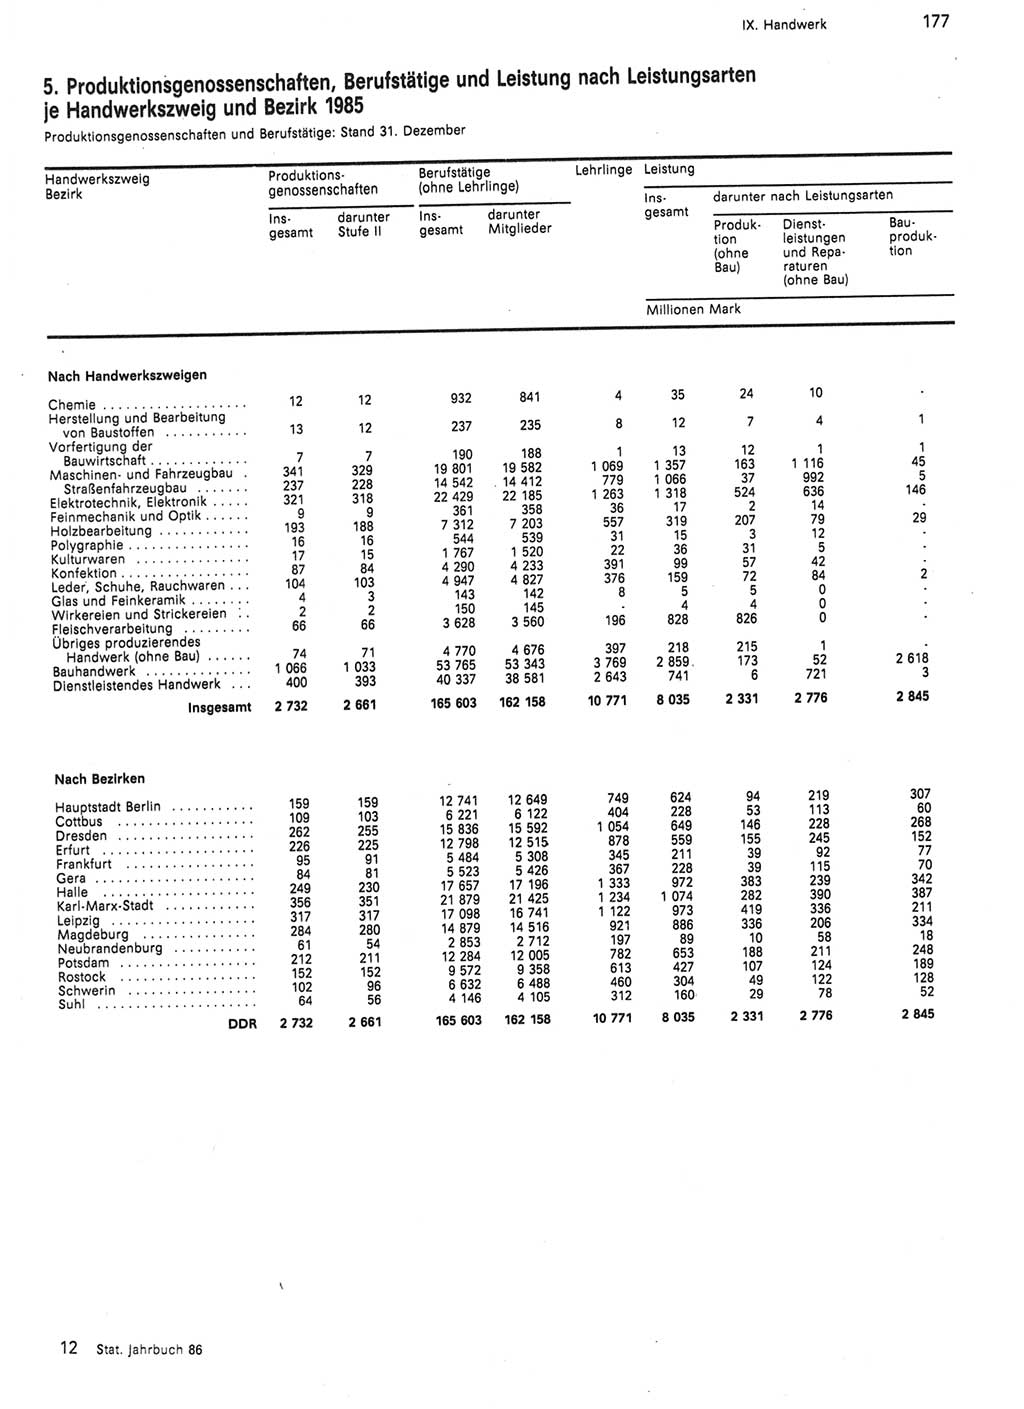 Statistisches Jahrbuch der Deutschen Demokratischen Republik (DDR) 1986, Seite 177 (Stat. Jb. DDR 1986, S. 177)